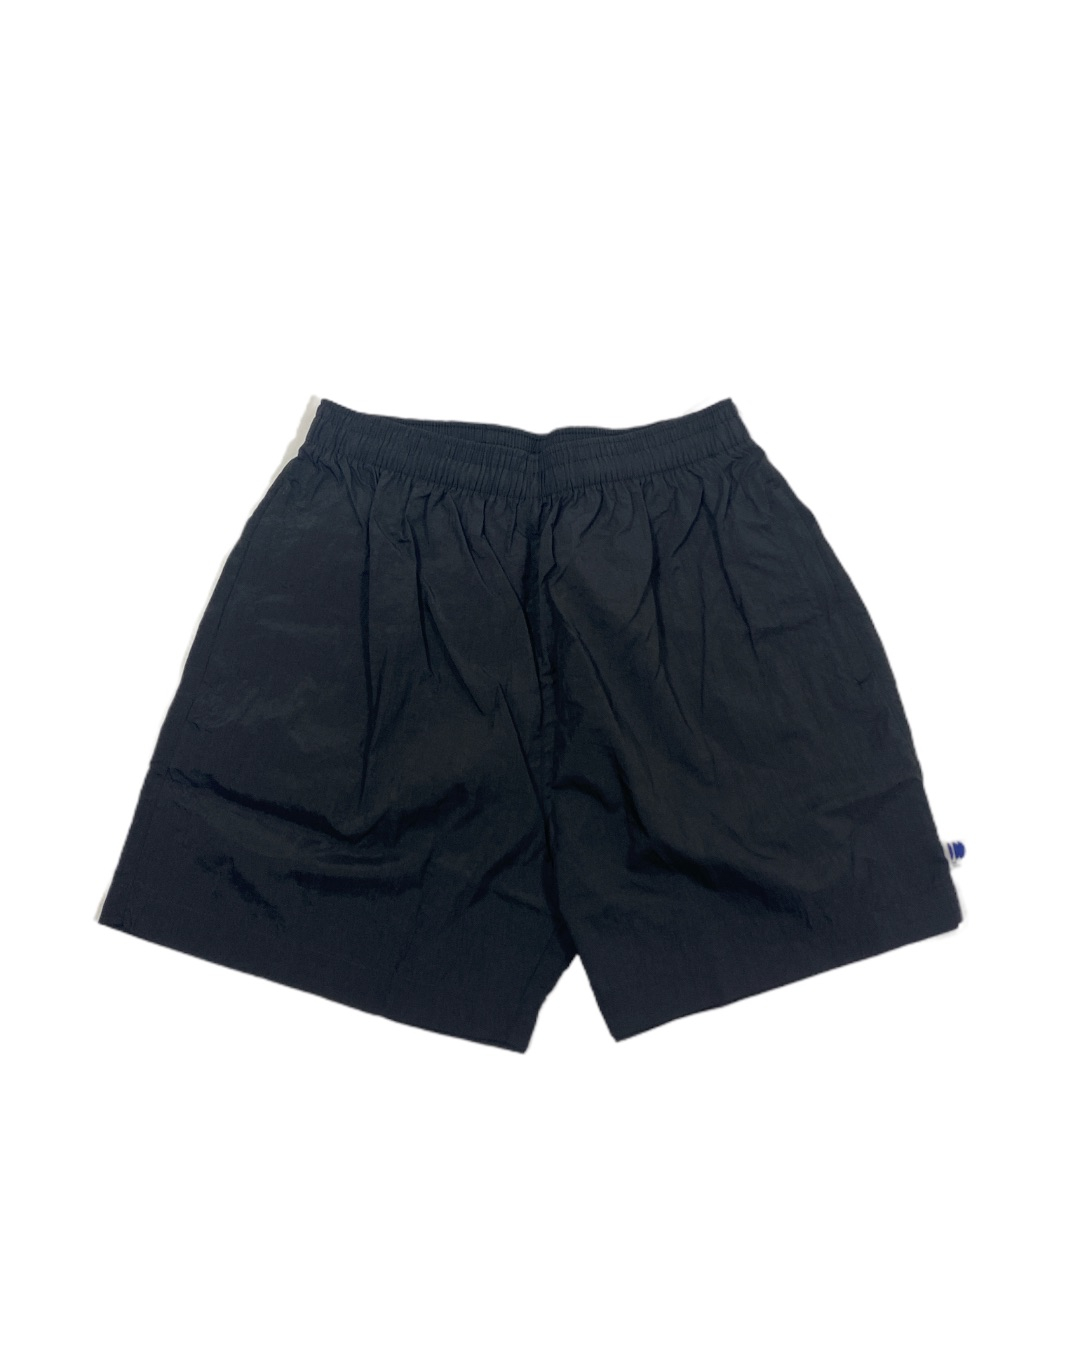 Umbre Shorts (Black)